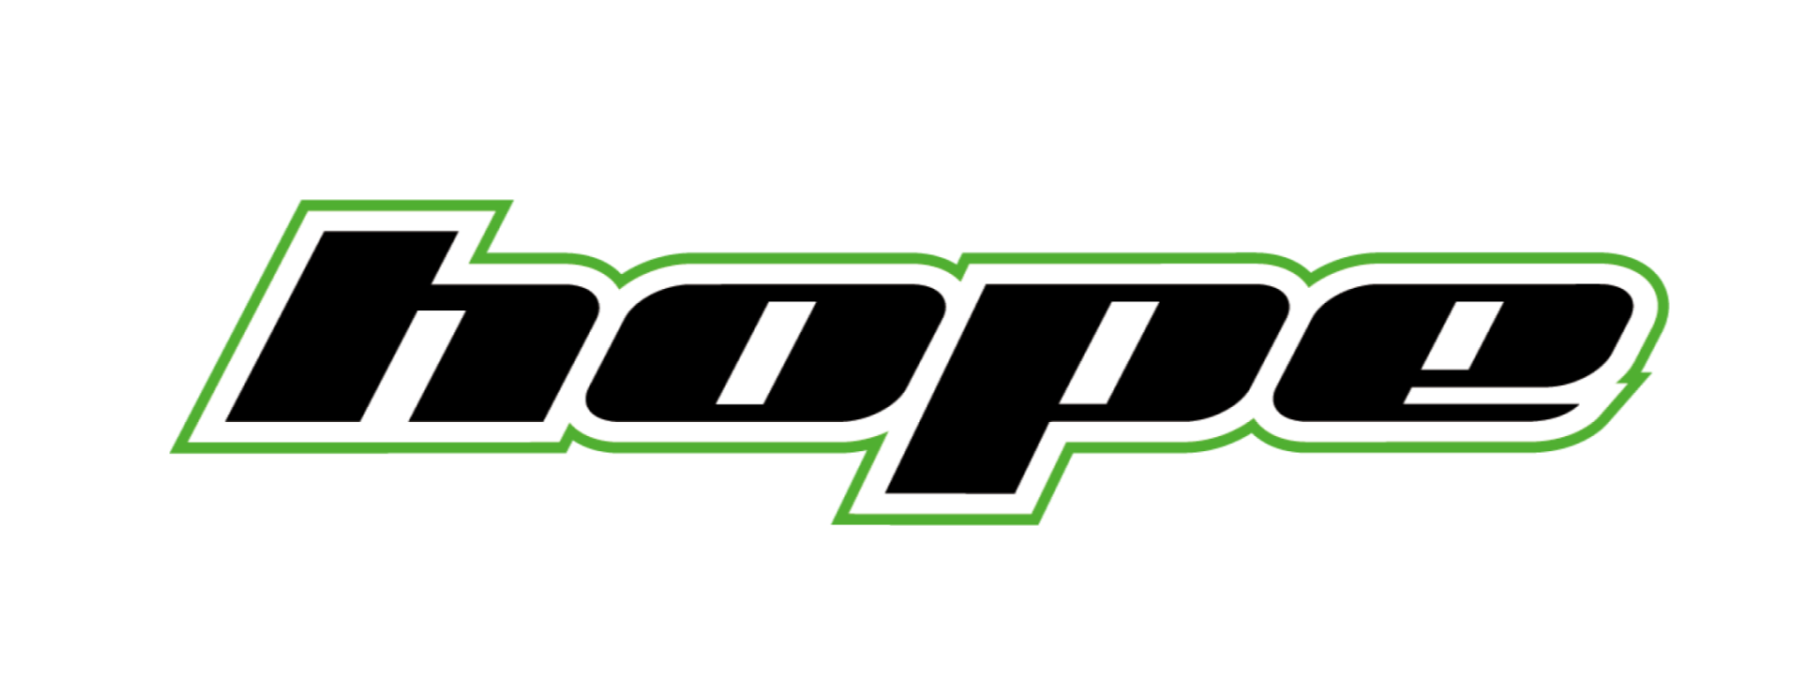 hope_logo (2)